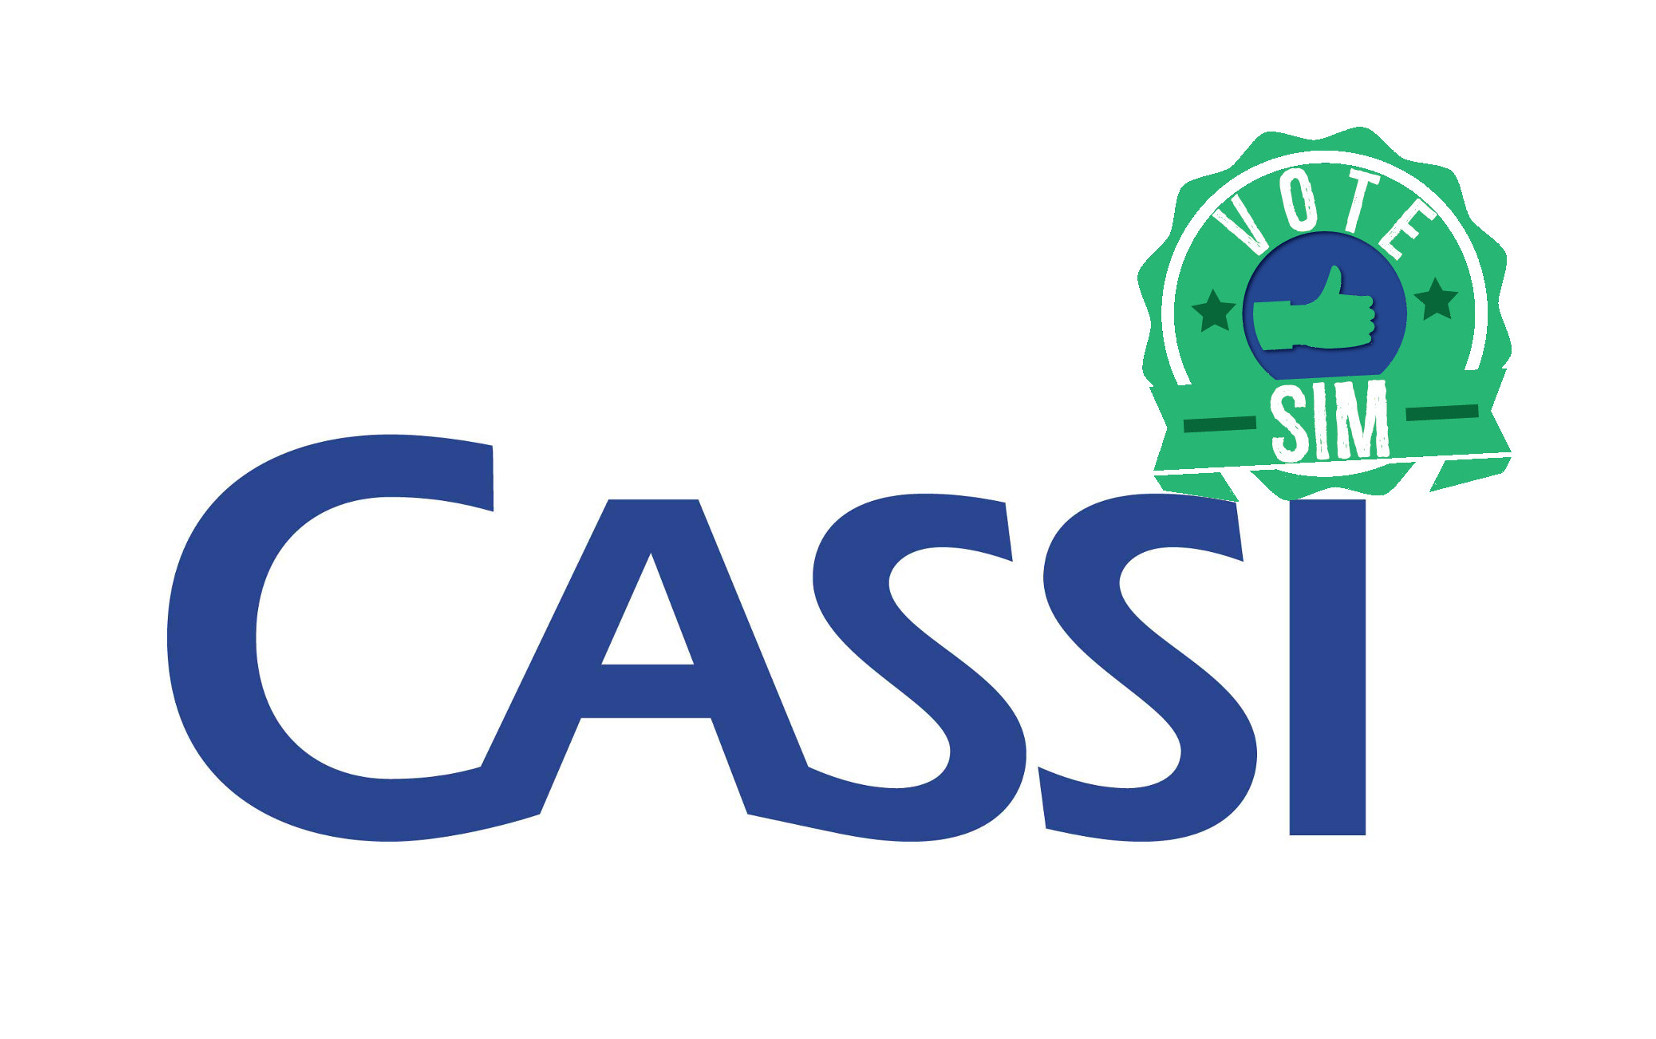 Tire suas dúvidas sobre a nova proposta para a Cassi